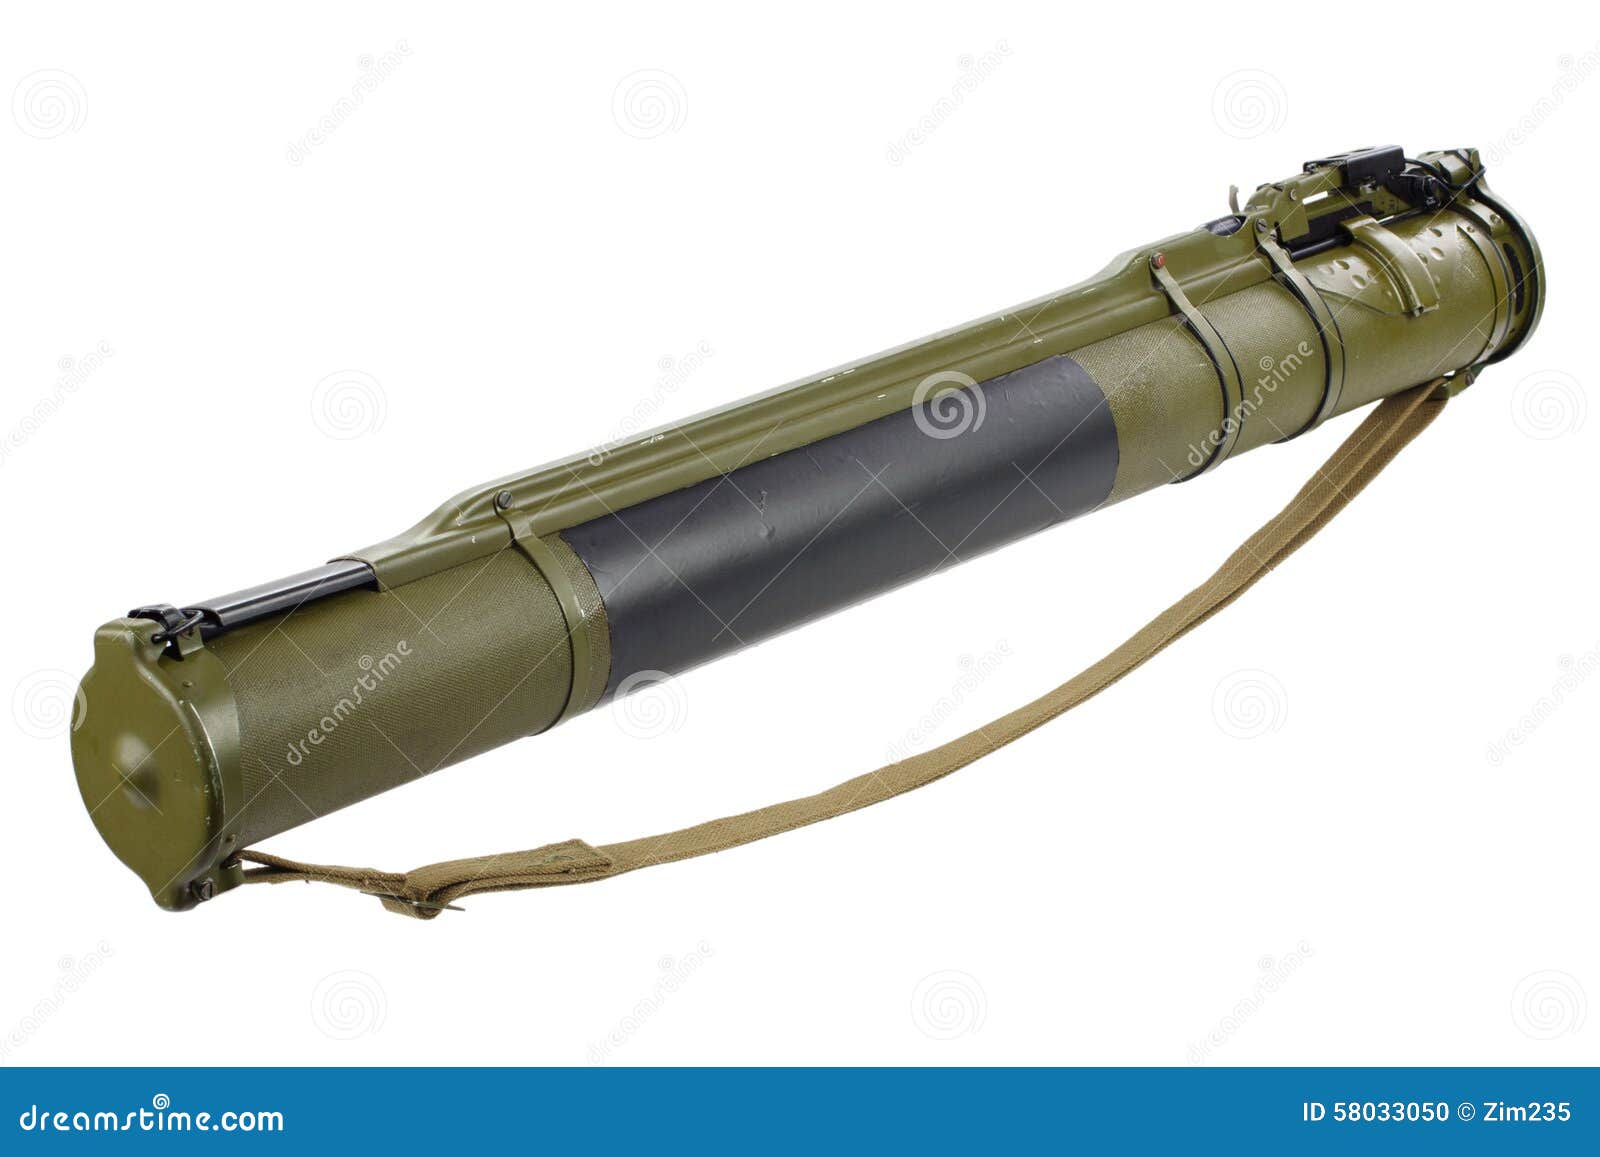 Rocket Propelled Grenade Launcher